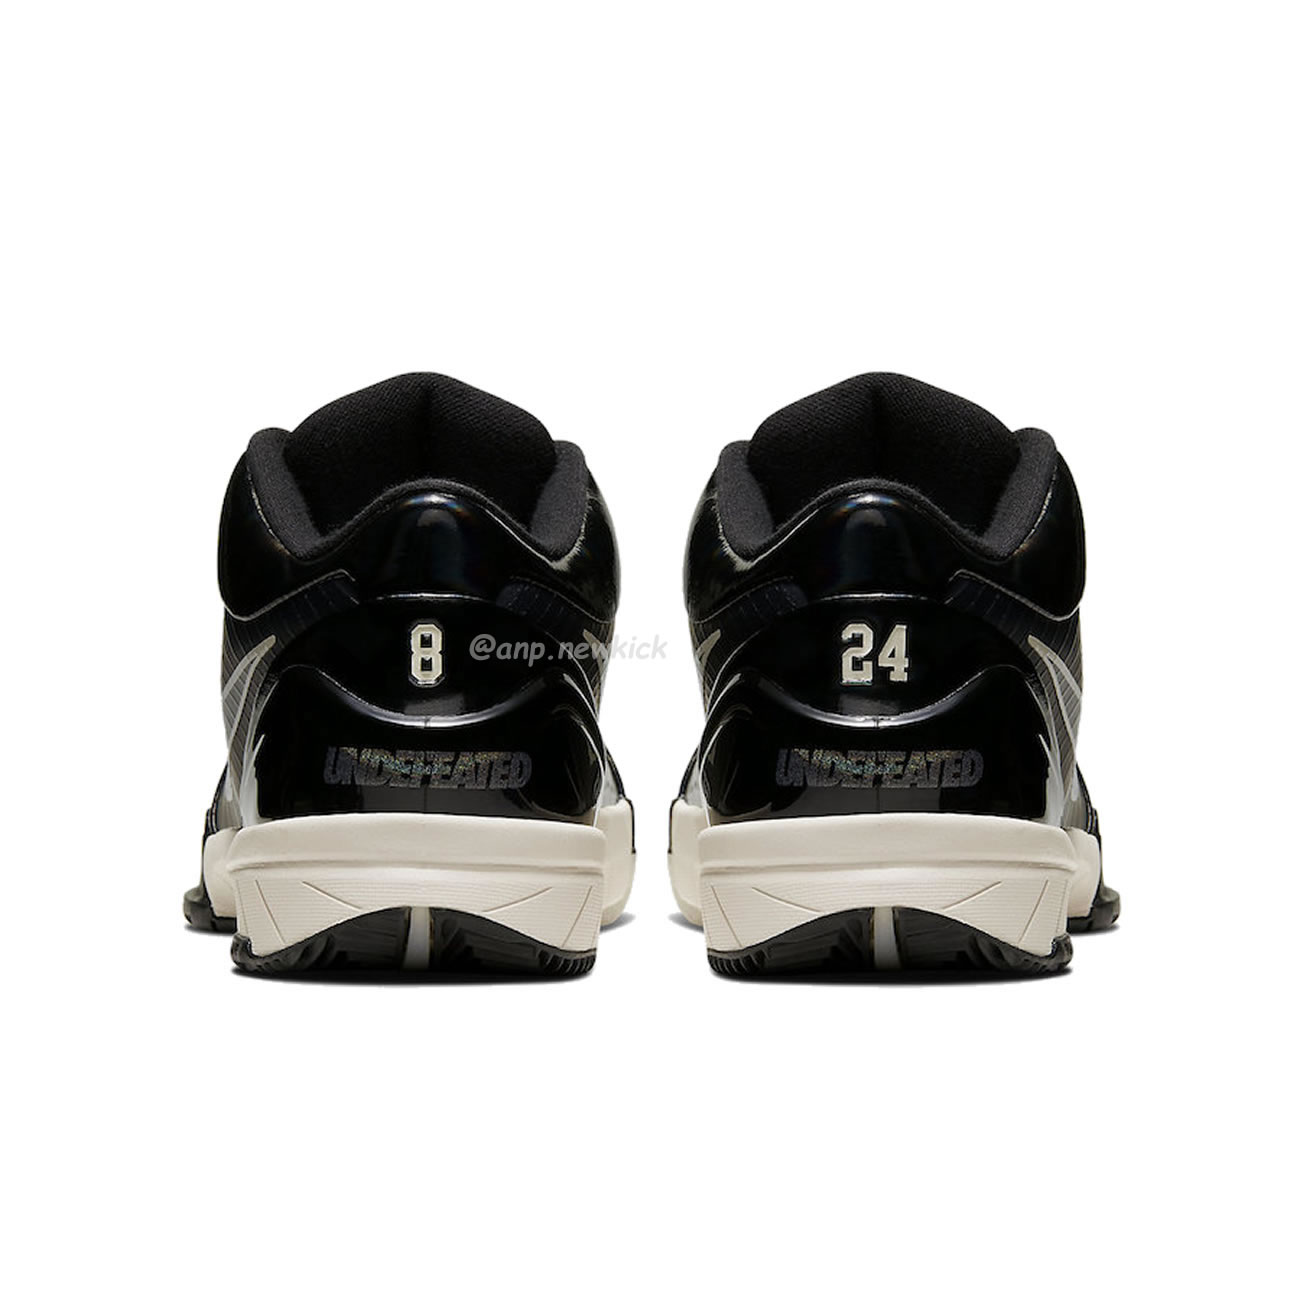 Nike Kobe 4 Protro Undefeated Black Mamba Cq3869 001 (16) - newkick.org